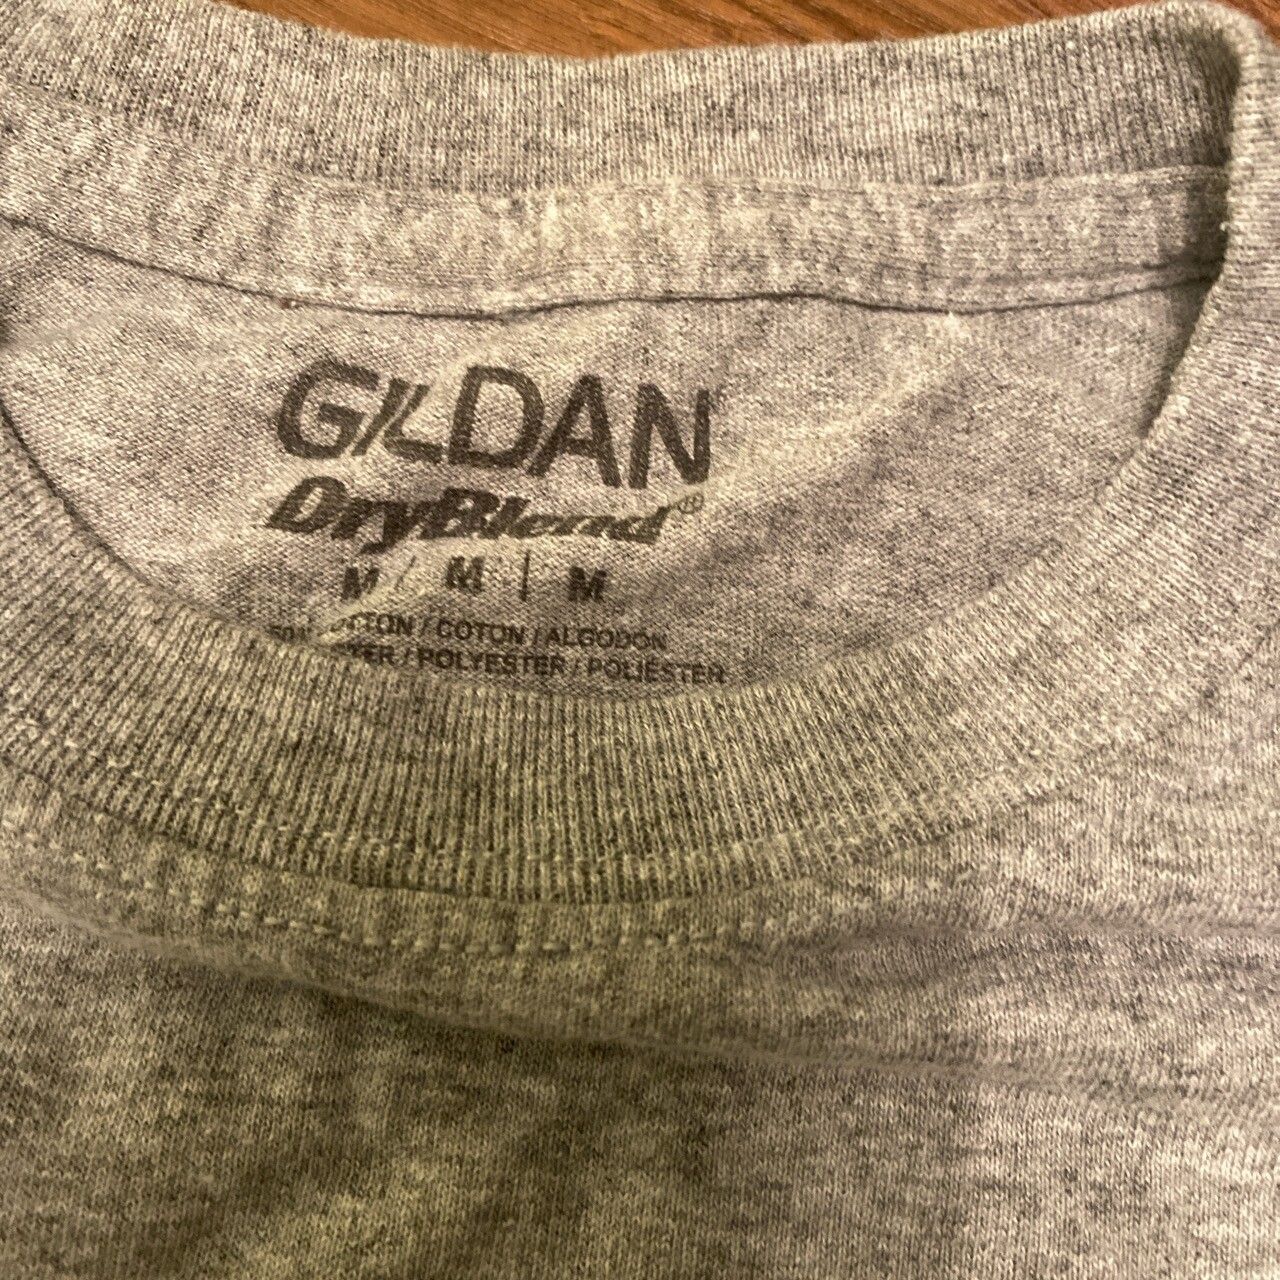 Gildan Michigan T Shirt / Tee Size US M / EU 48-50 / 2 - 2 Preview